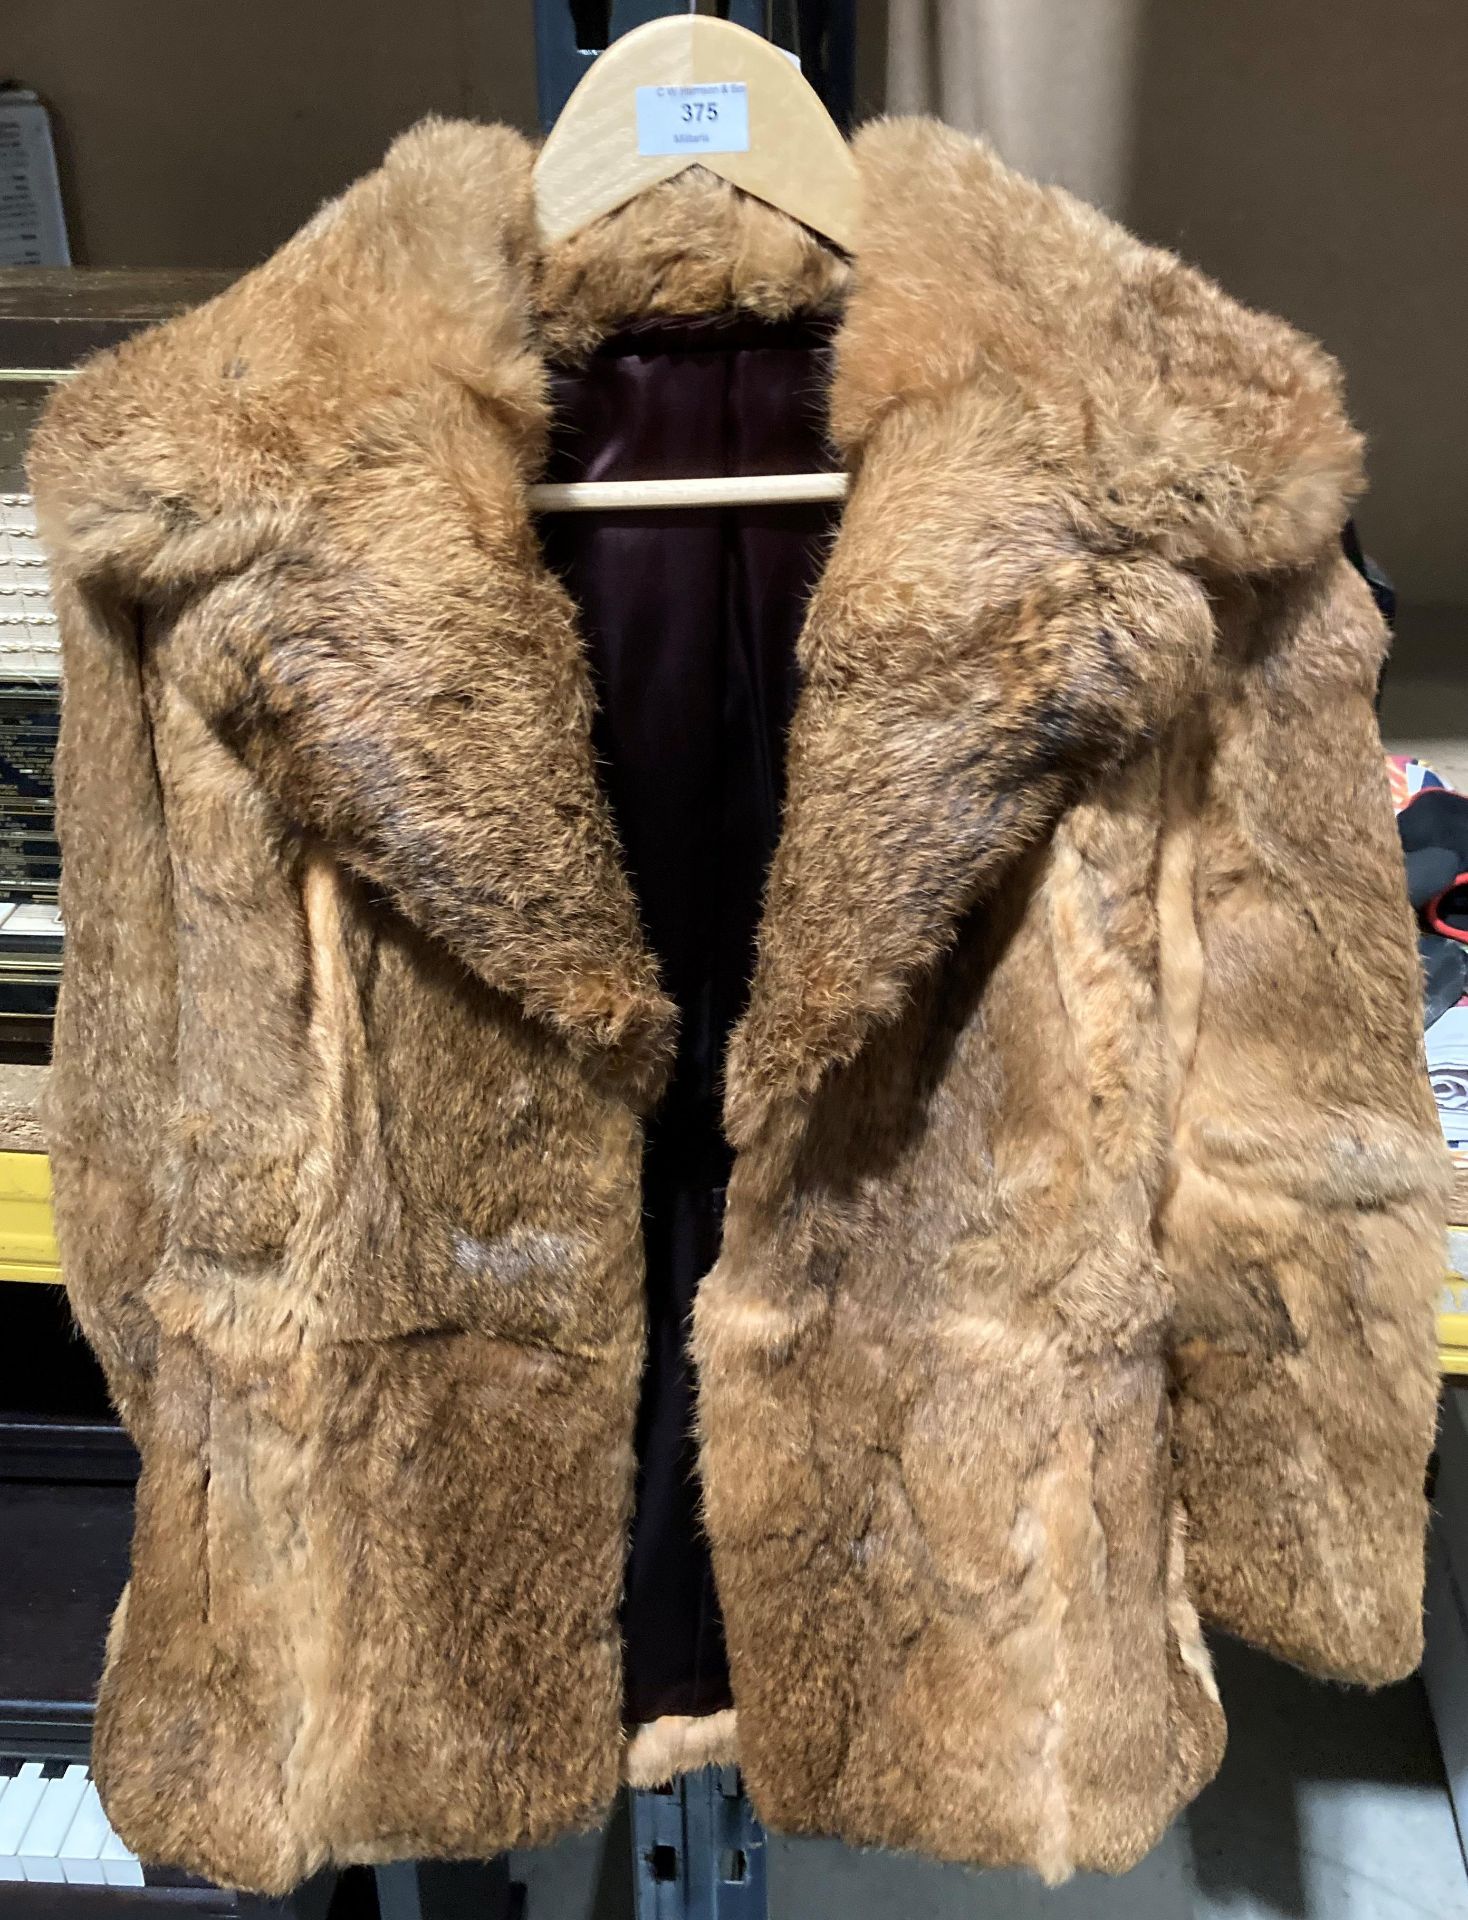 A short rabbit fur coat - no make or size shown (Saleroom location: S2 QB05)